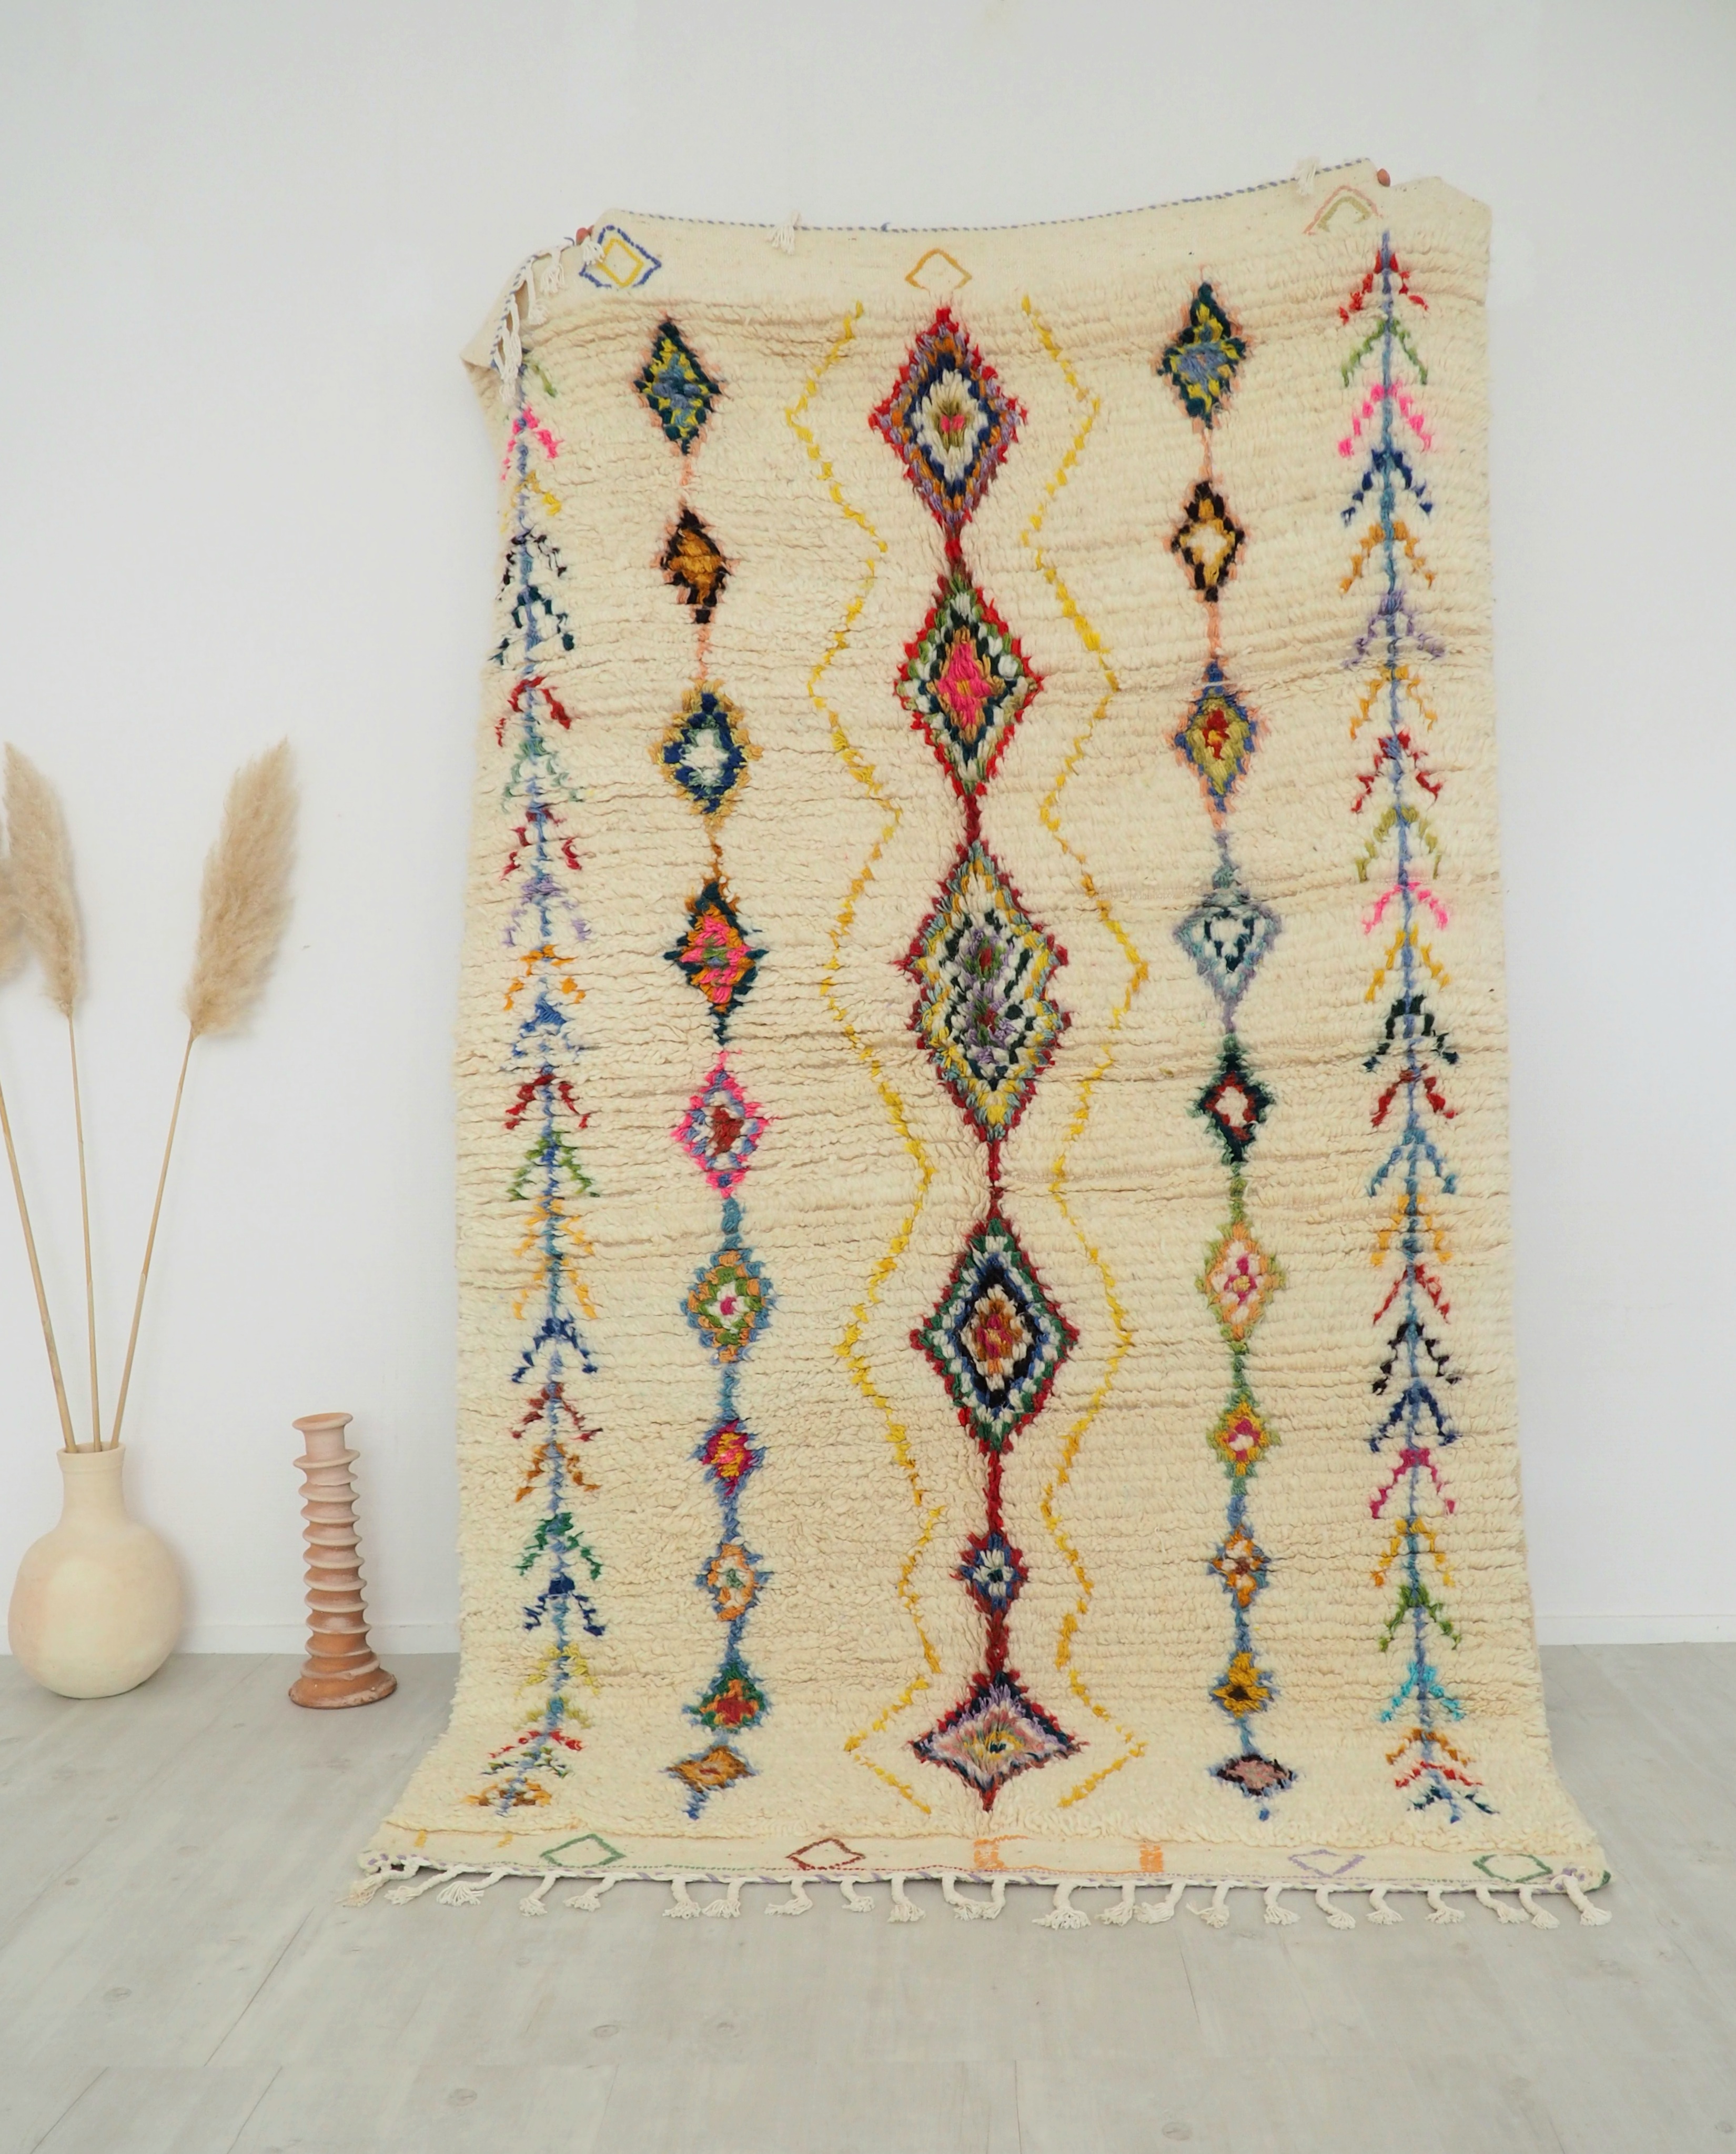 Tapis berbere Marocain fait main en pure laine écru et motifs colorés